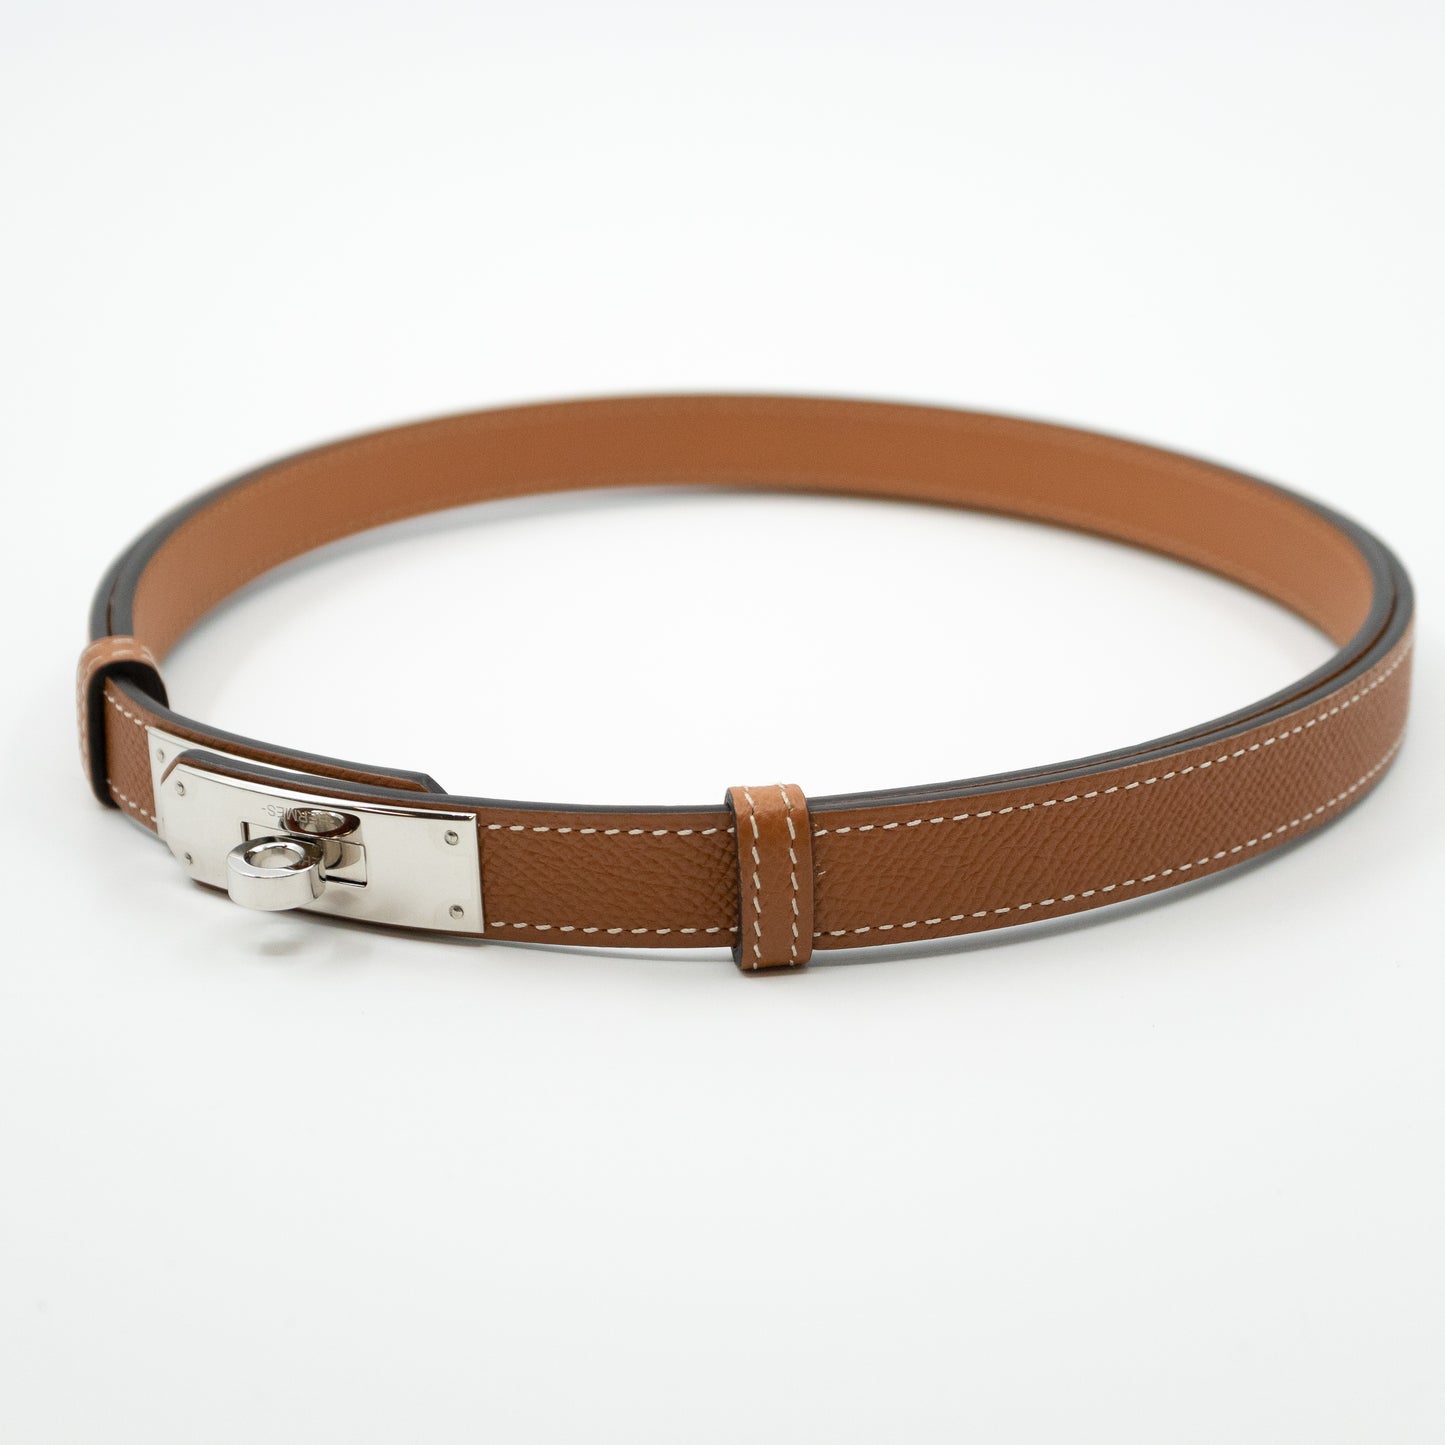 Kelly 18 mm Belt Adjustable Gold Leather